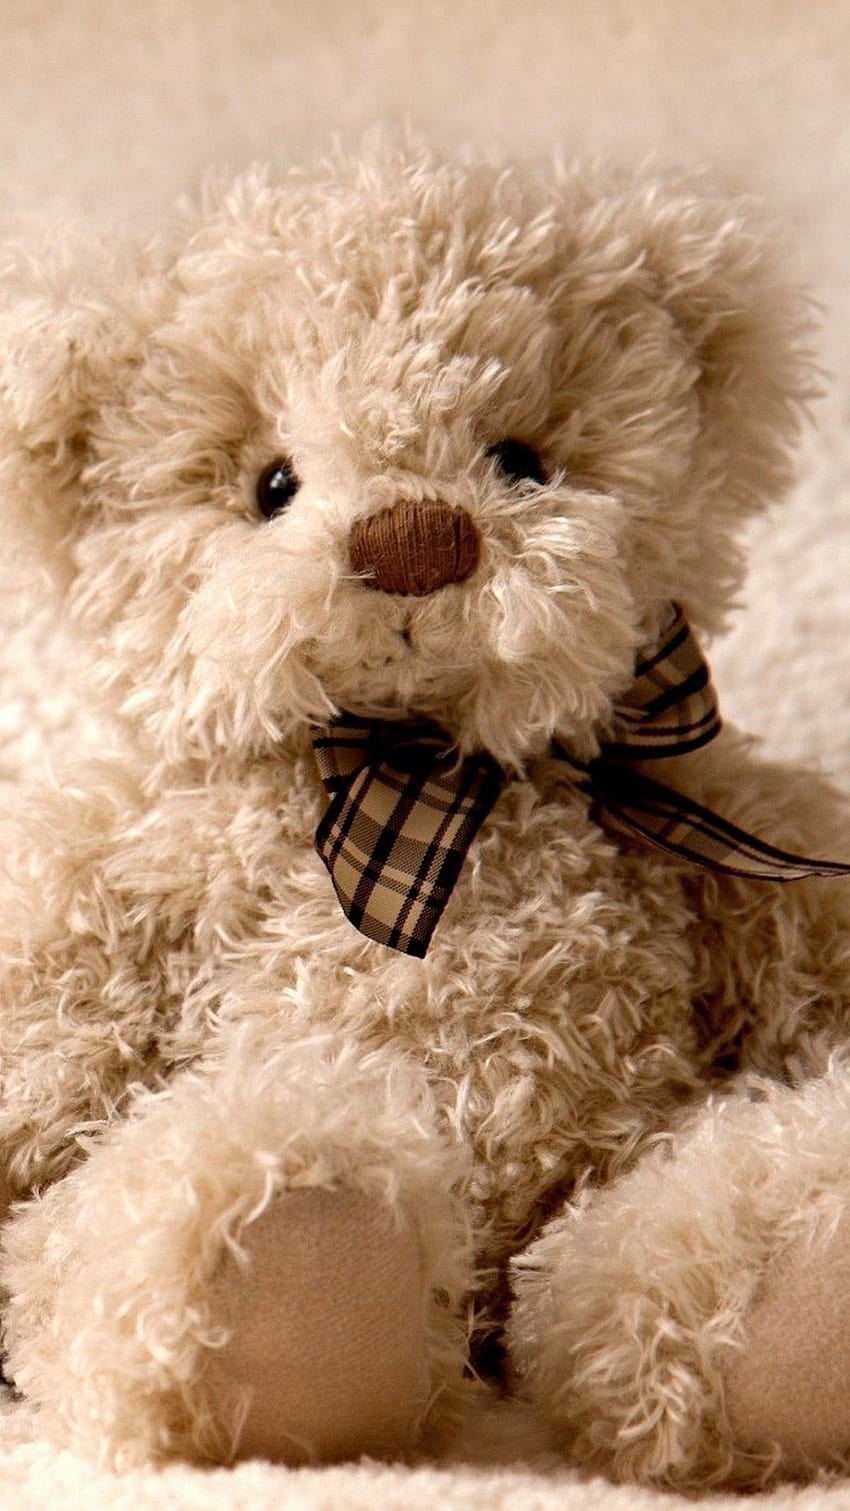 Cute Teddy Bear iPhone, cute teddy bear phone HD phone wallpaper ...